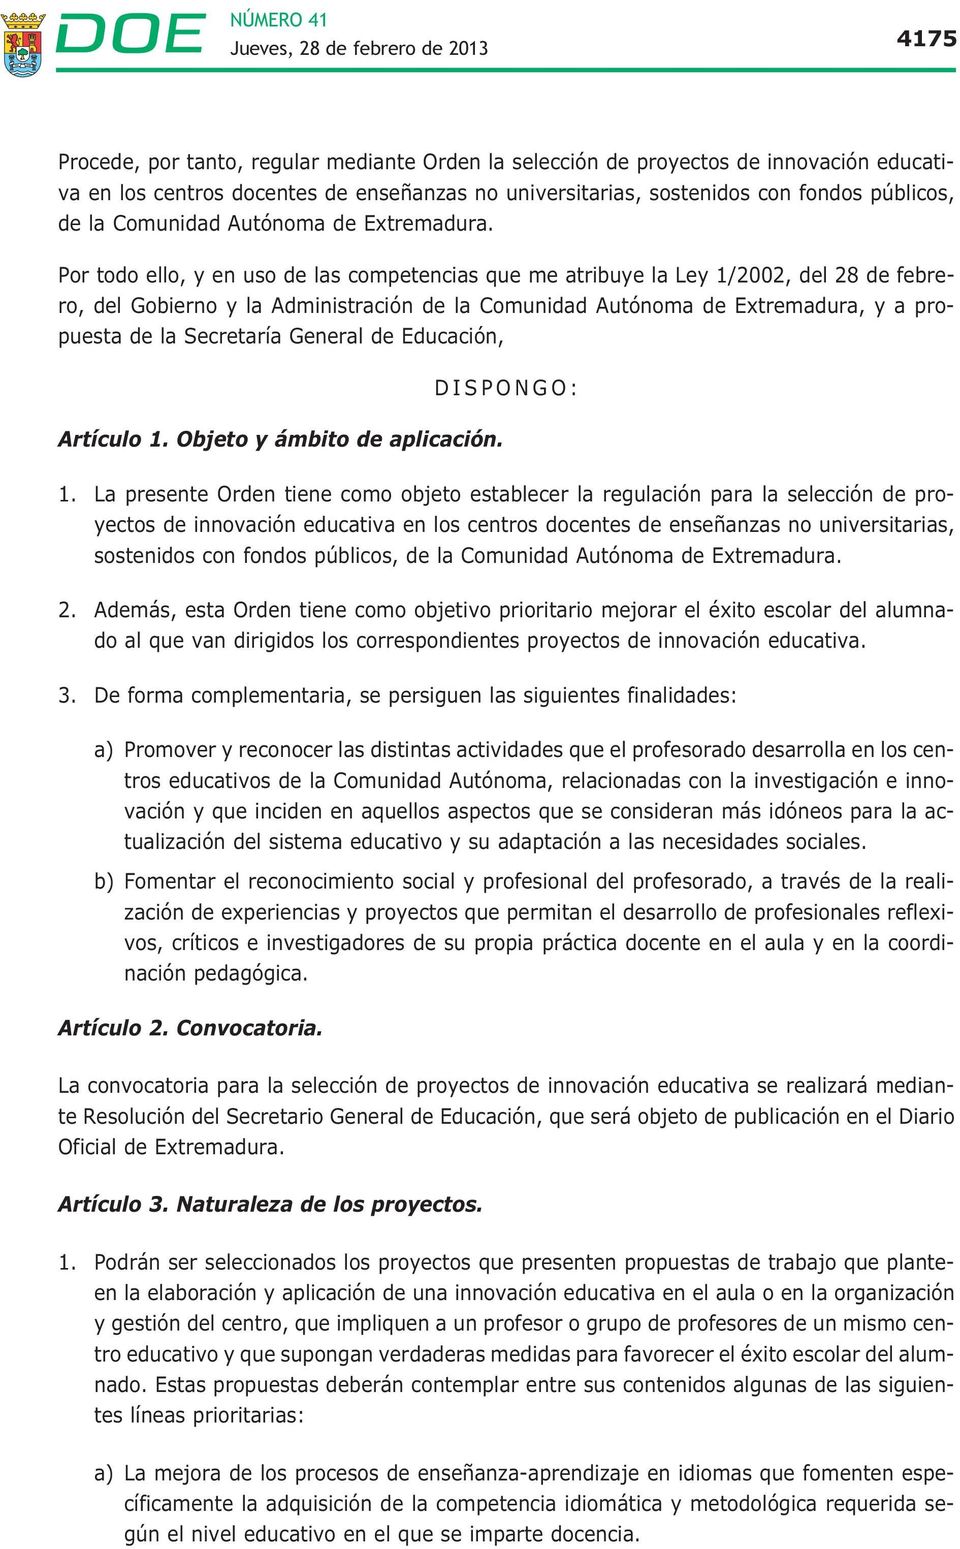 Por todo ello, y en uso de las competencias que me atribuye la Ley 1/2002, del 28 de febrero, del Gobierno y la Administración de la Comunidad Autónoma de Extremadura, y a propuesta de la Secretaría